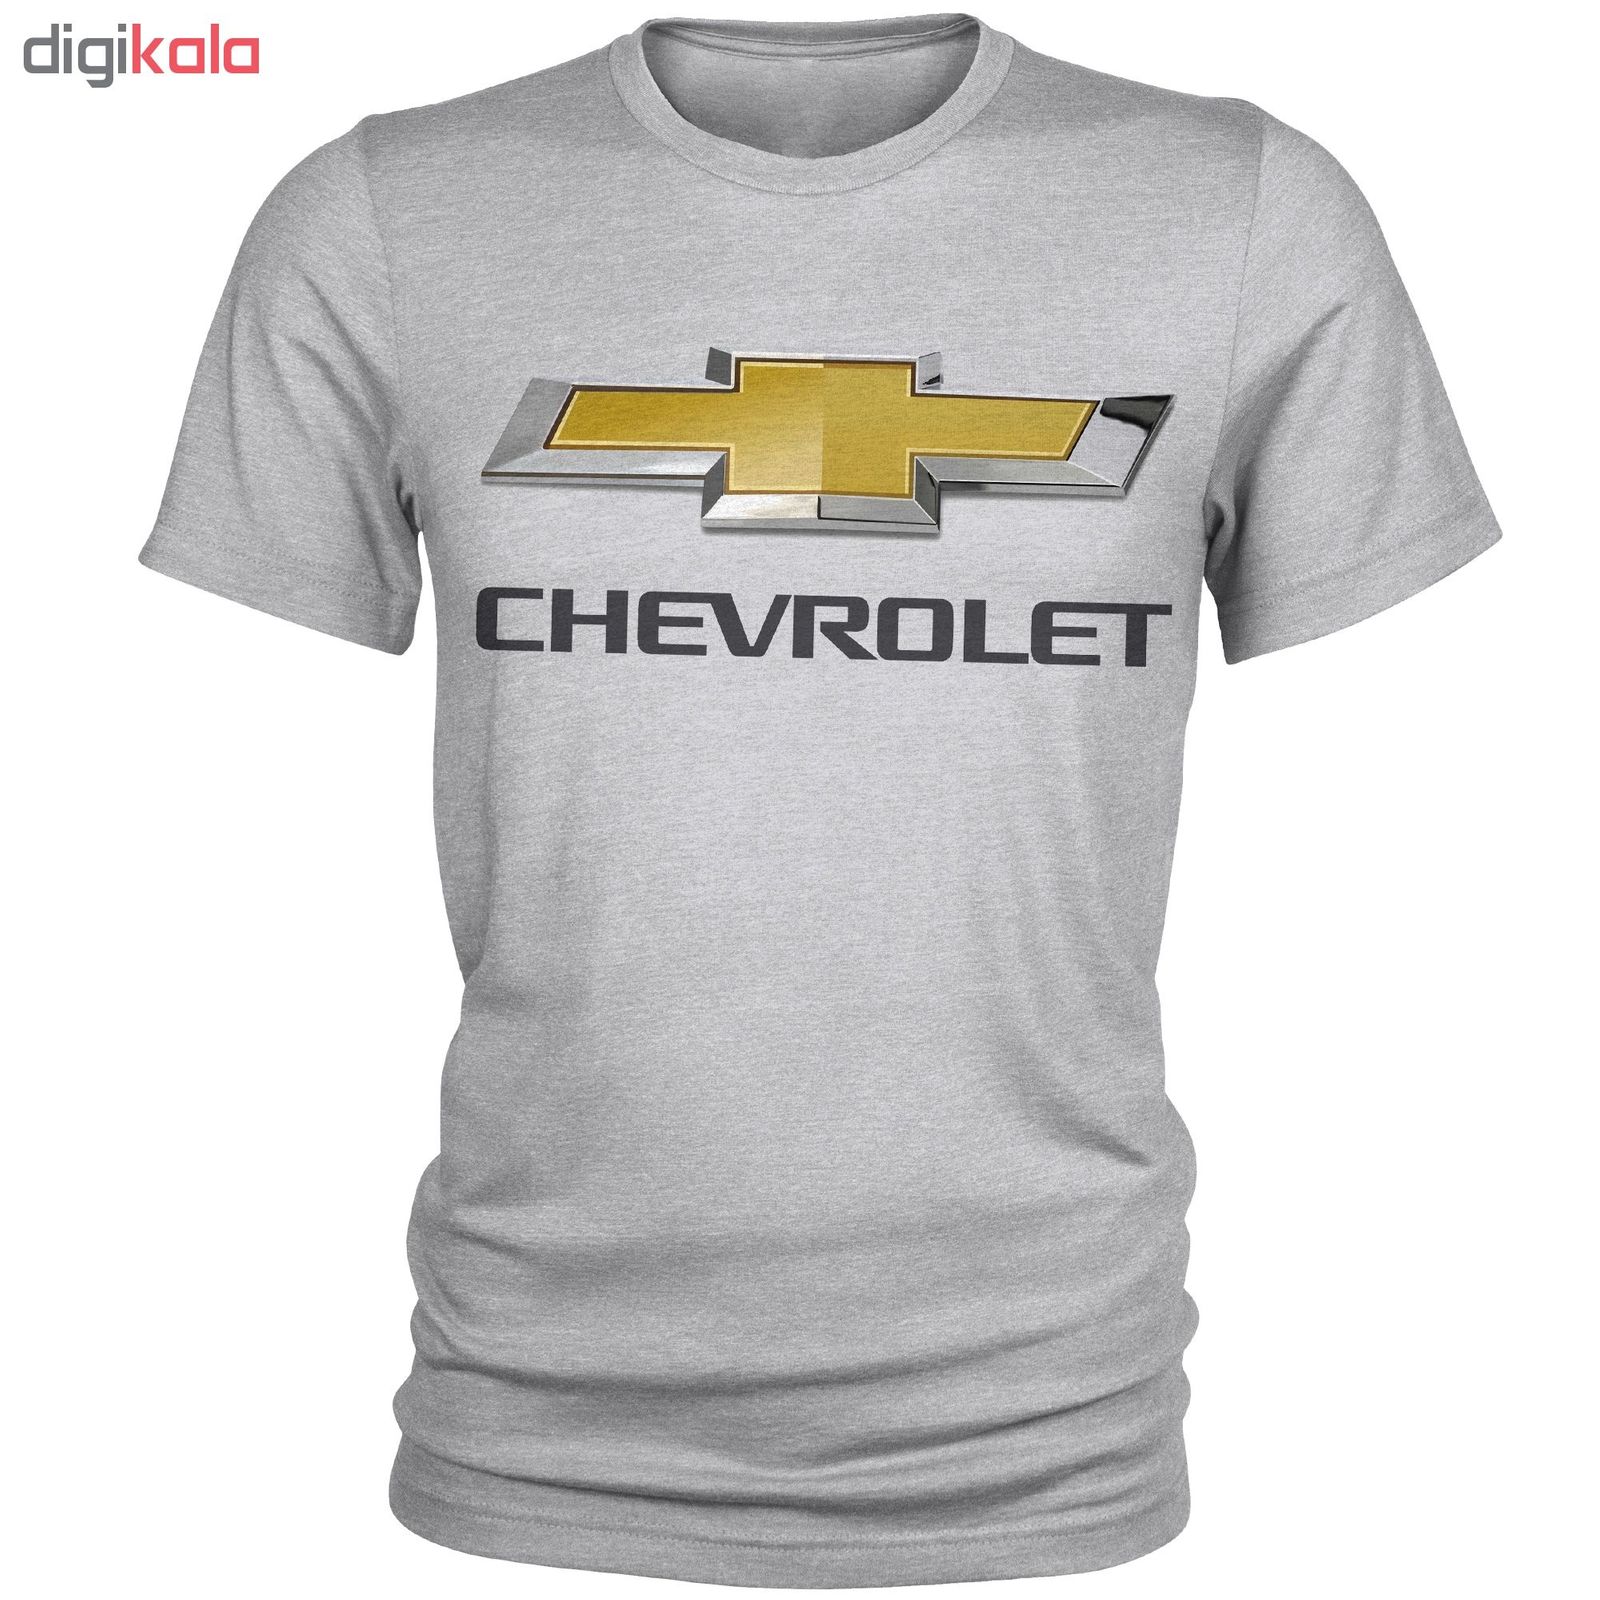 تی شرت مردانه مدل Chevrolet کد A108